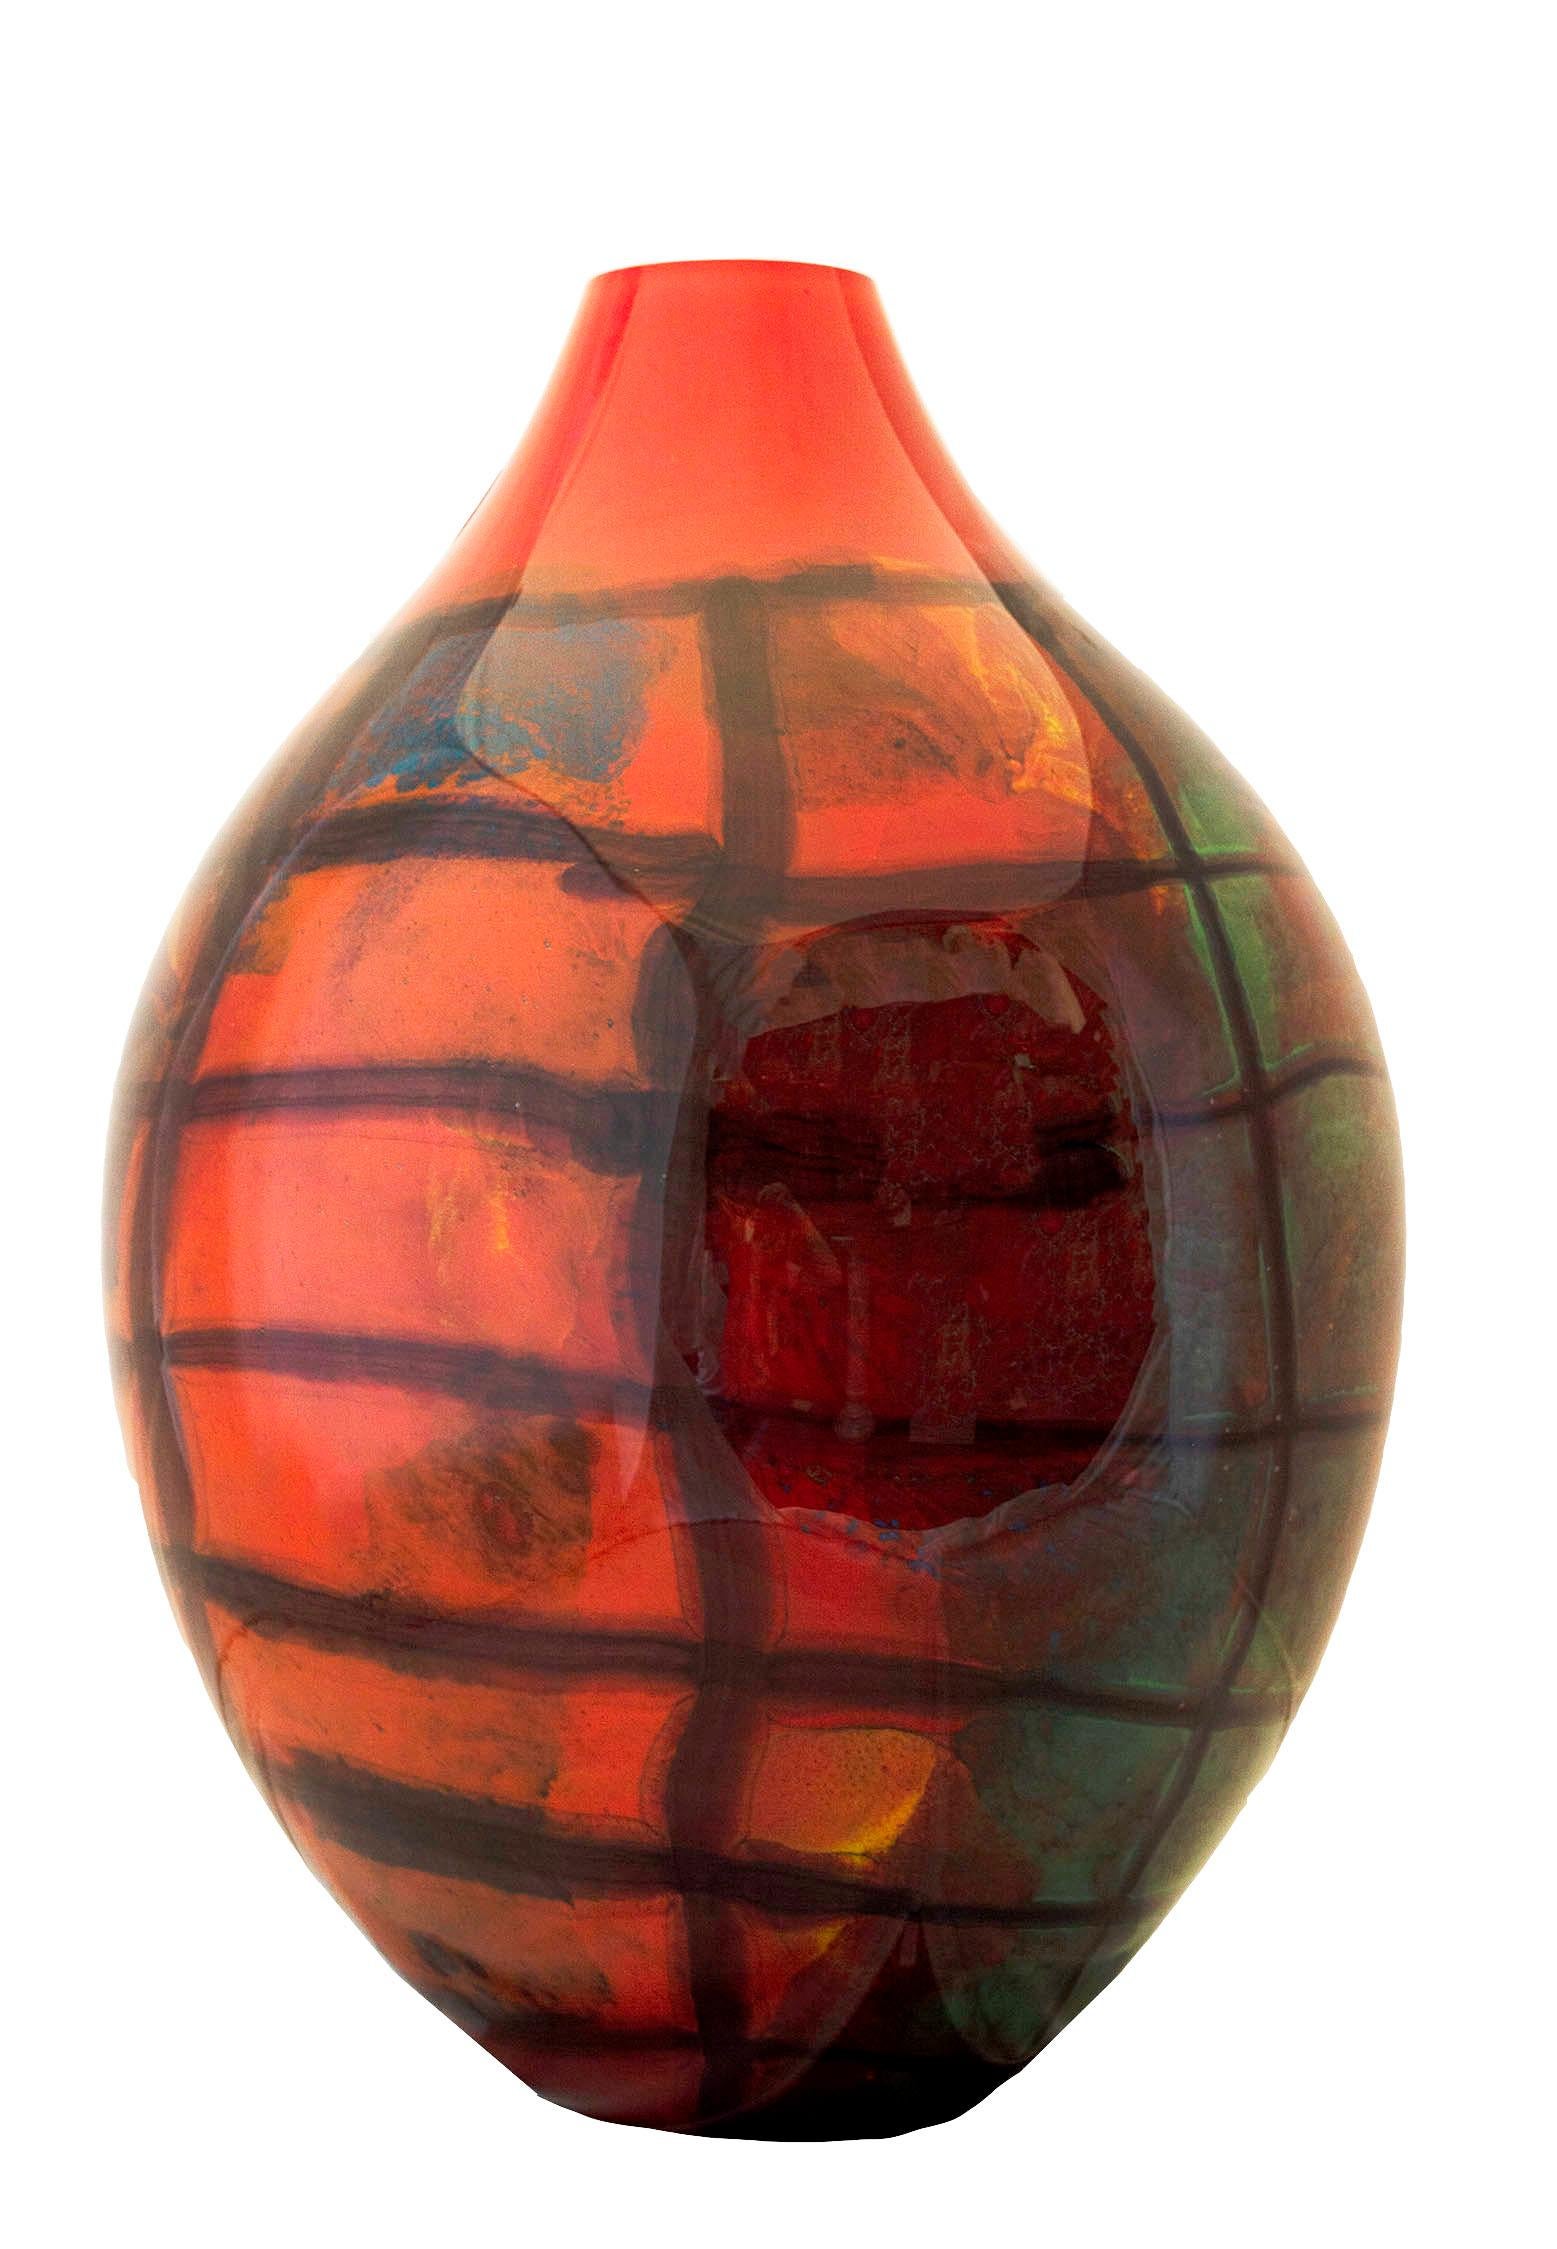 Le grand vase ovale rouge Karo de Ioan Nemtoi pourrait facilement devenir la pièce maîtresse de n'importe quel espace ou de n'importe quelle collection d'art verrier. La forme ovale du vase et sa couleur rouge vif lui confèrent une présence